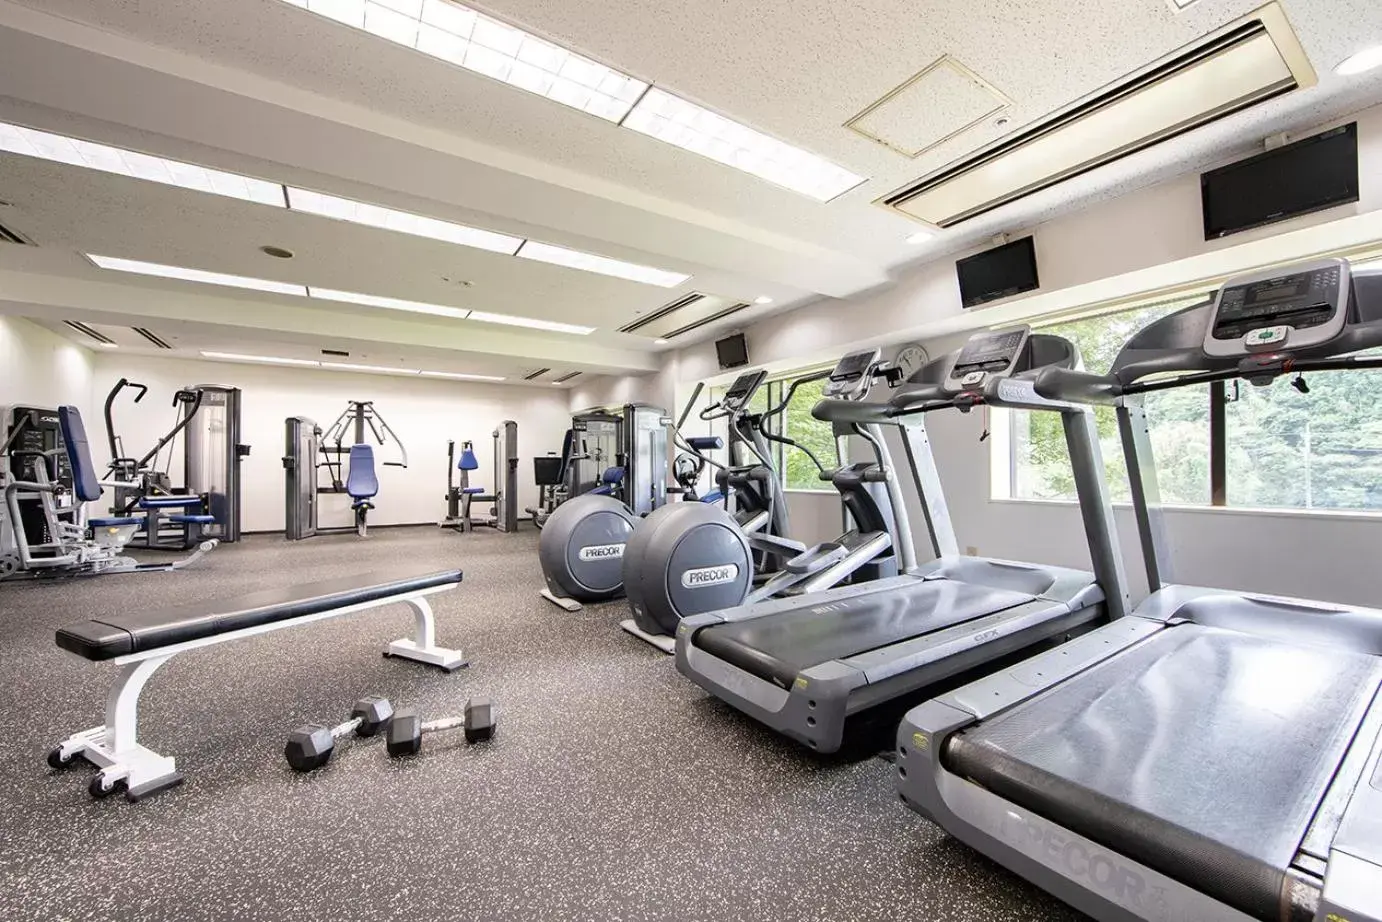 Fitness centre/facilities, Fitness Center/Facilities in International Garden Hotel Narita